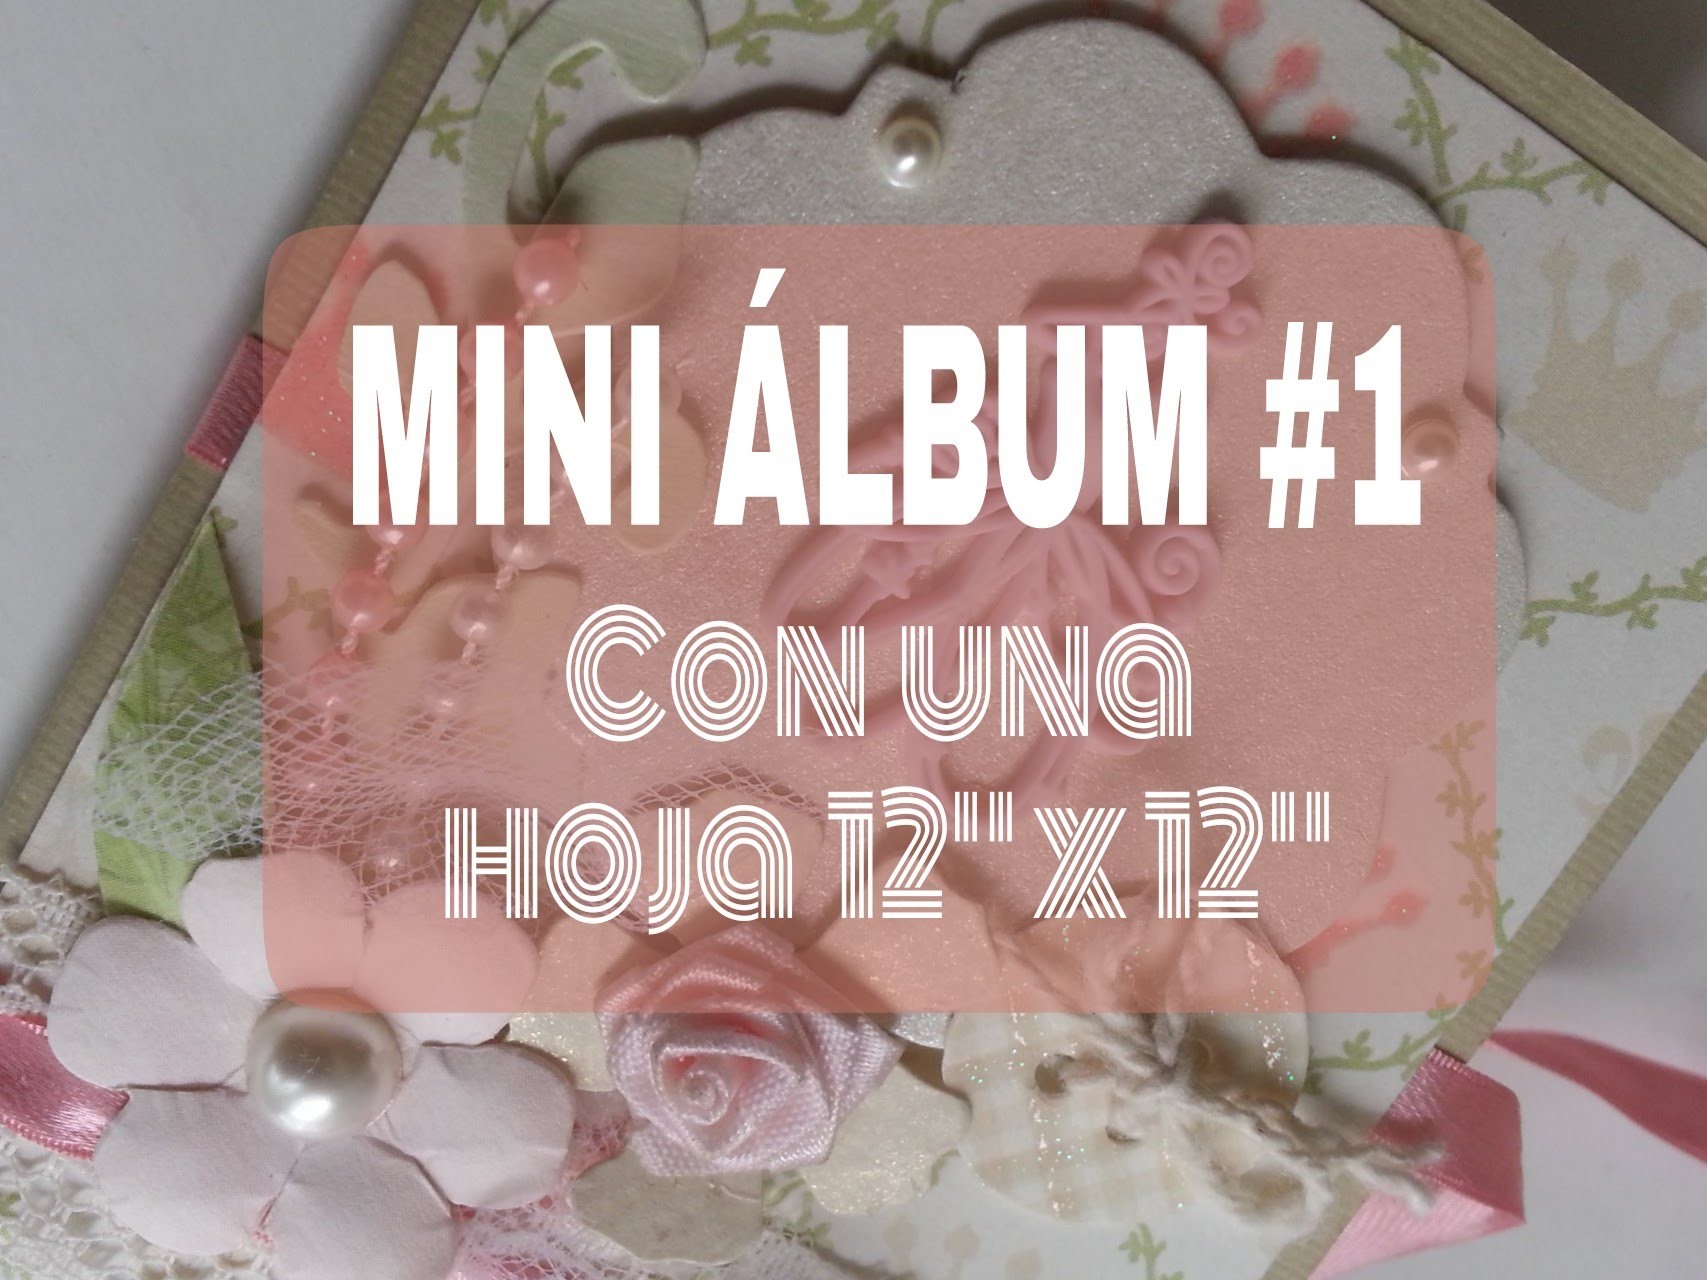 MINI ALBUM 1.5 CON UNA HOJA DE 12" por 12". tutorial